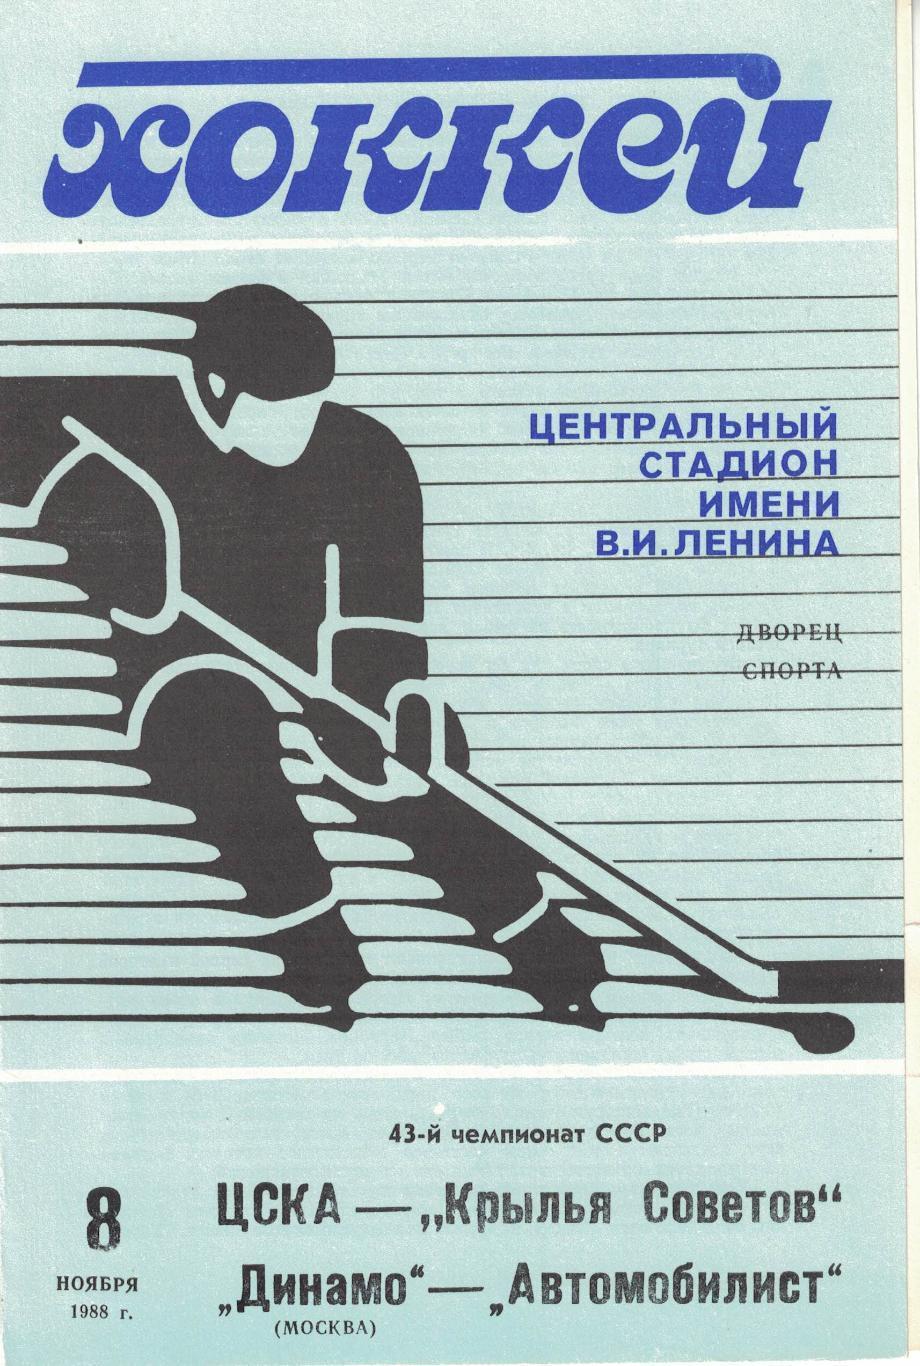 1988 Хоккей ЦСКА - Крылья Советов - Динамо Москва - Автомобилист